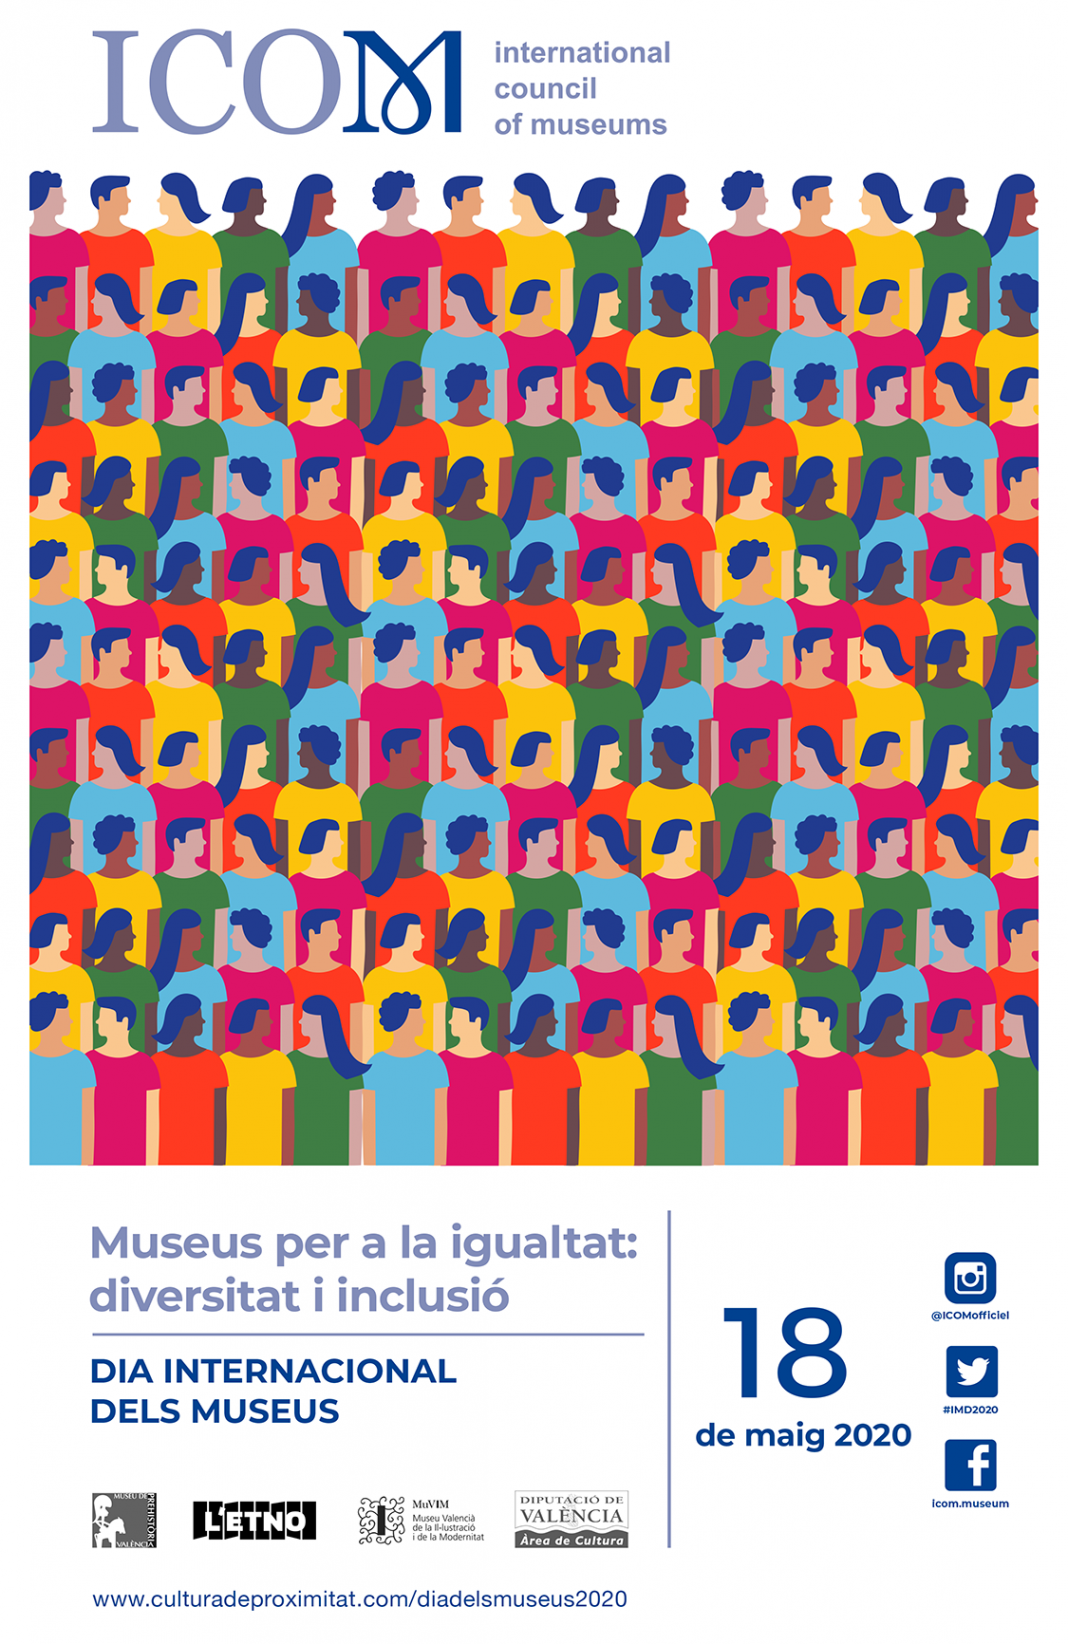 Los museos de la Diputacio apuestan por la diversidad y la inclusión para celebrar el Día de los Museos